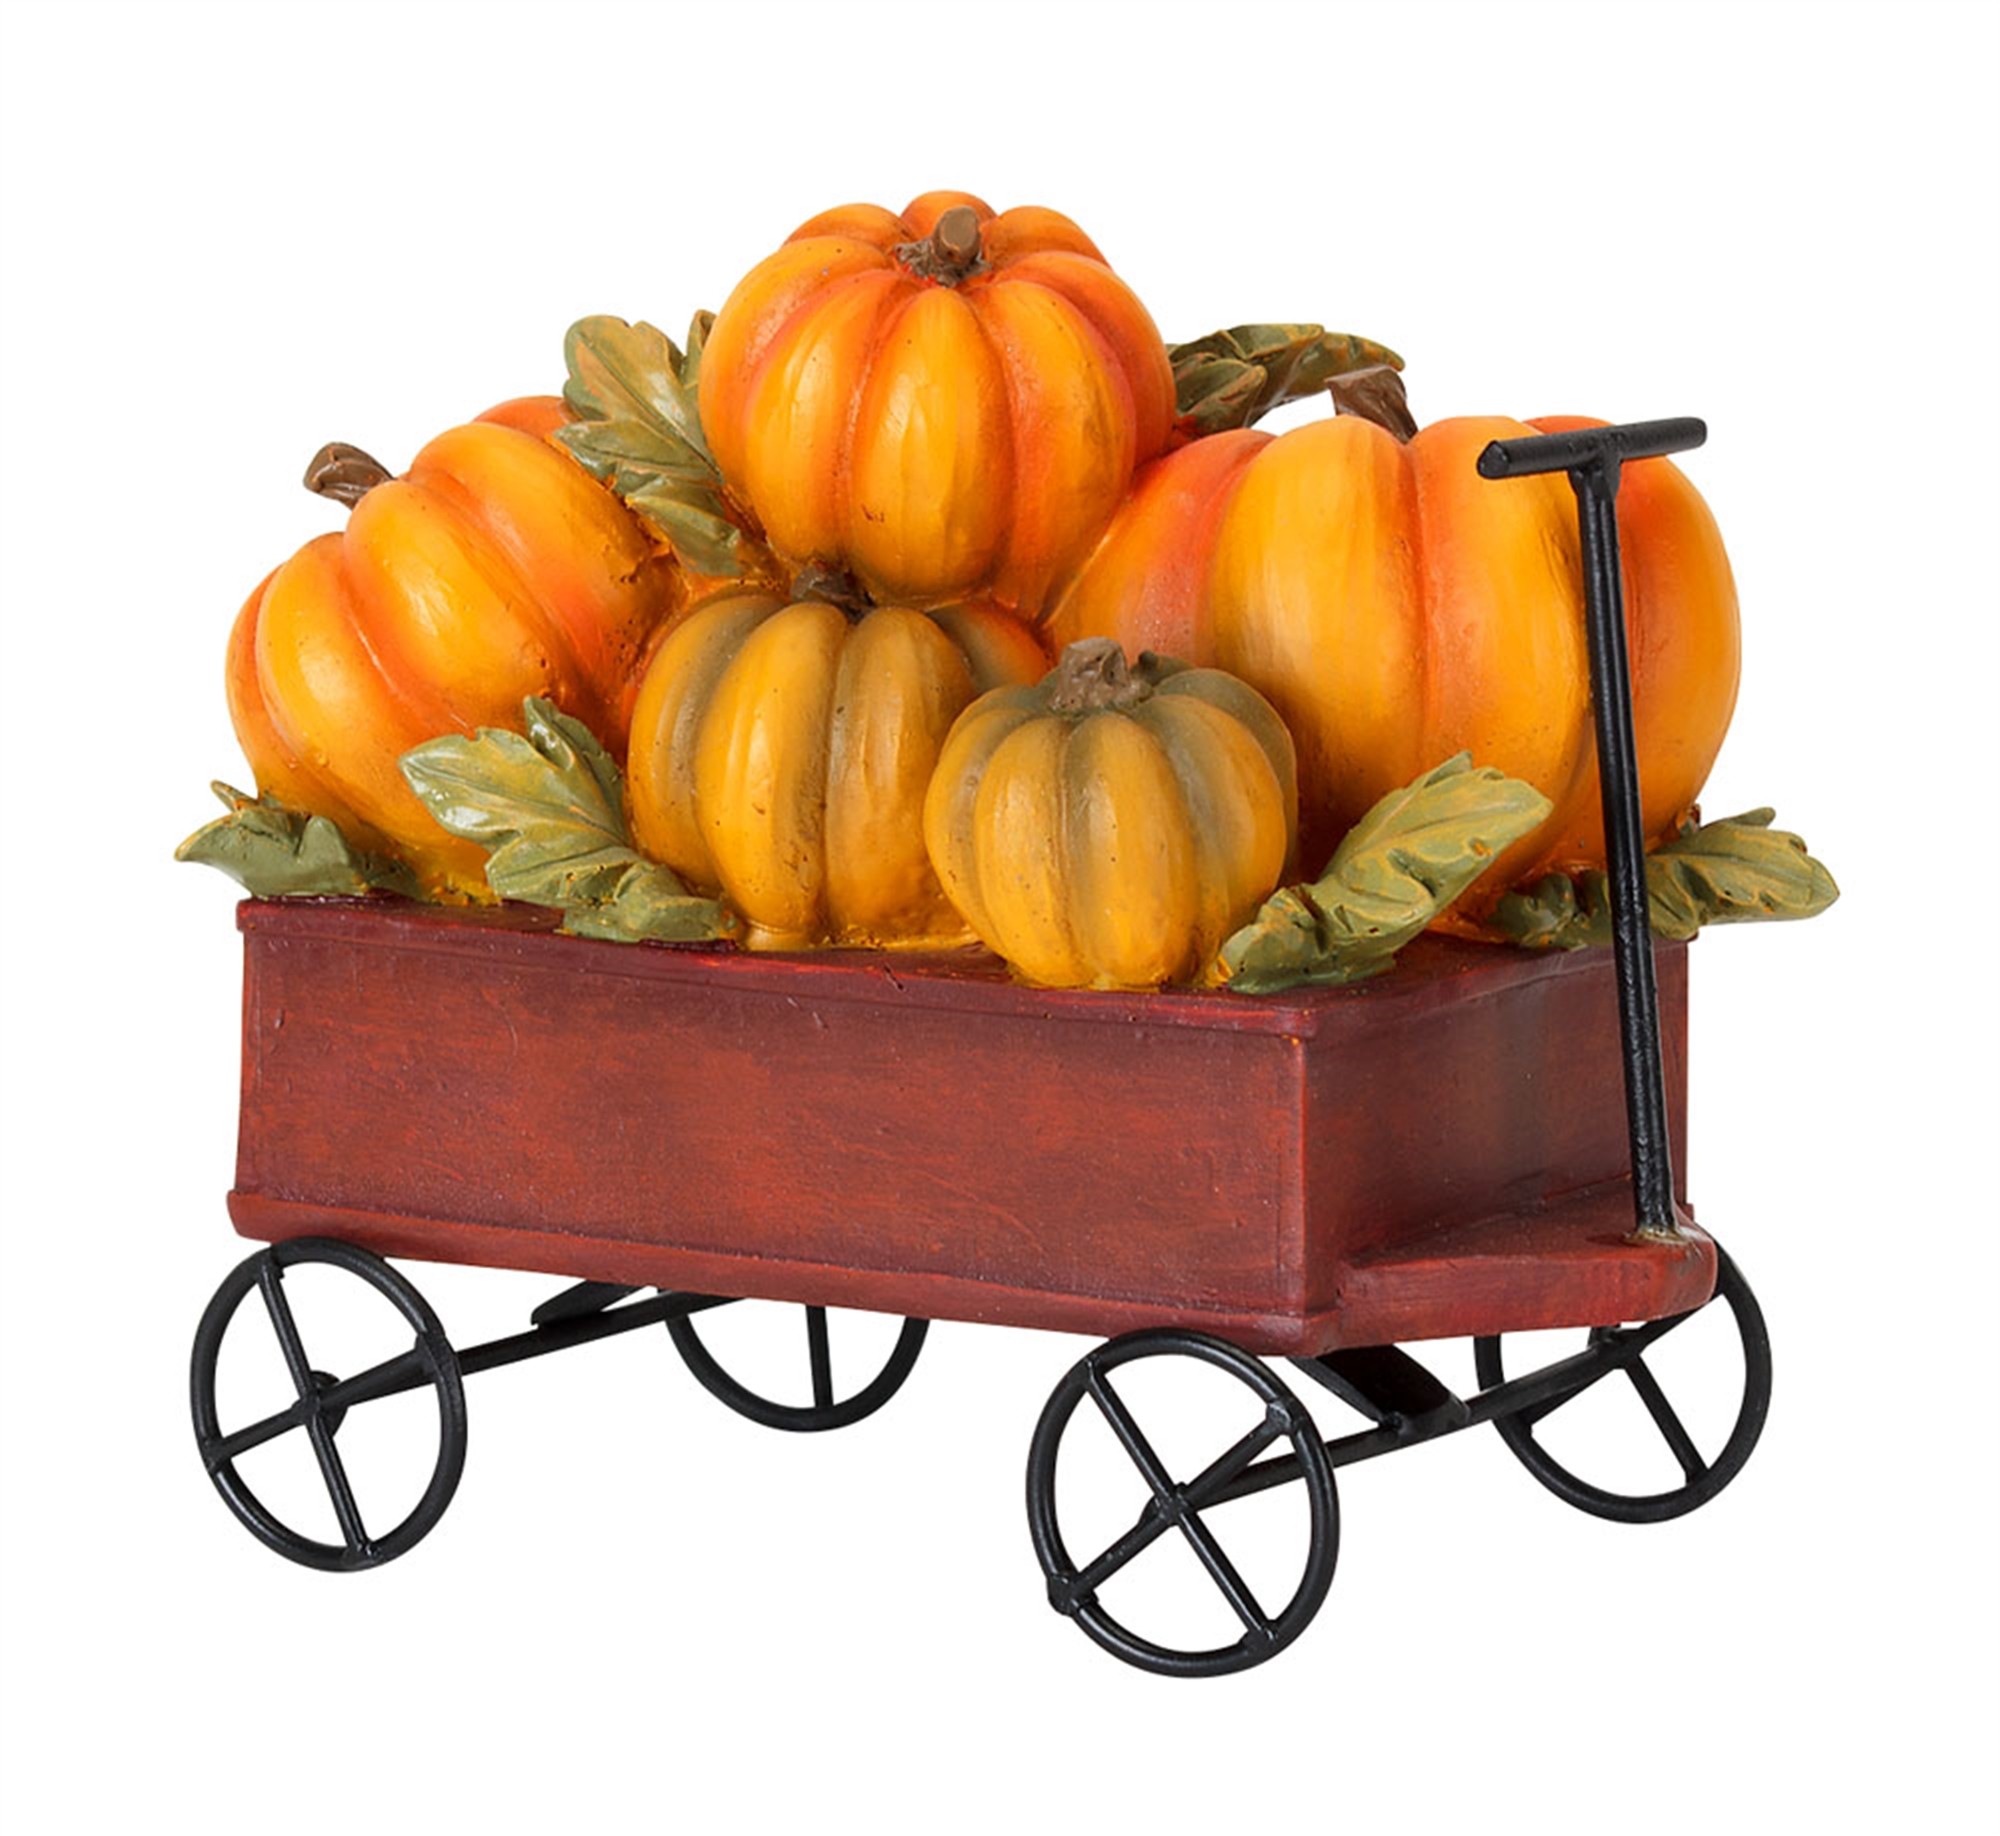 Wagon w/Pumpkins 6.25"L x 5"H (Set of 4)  Resin